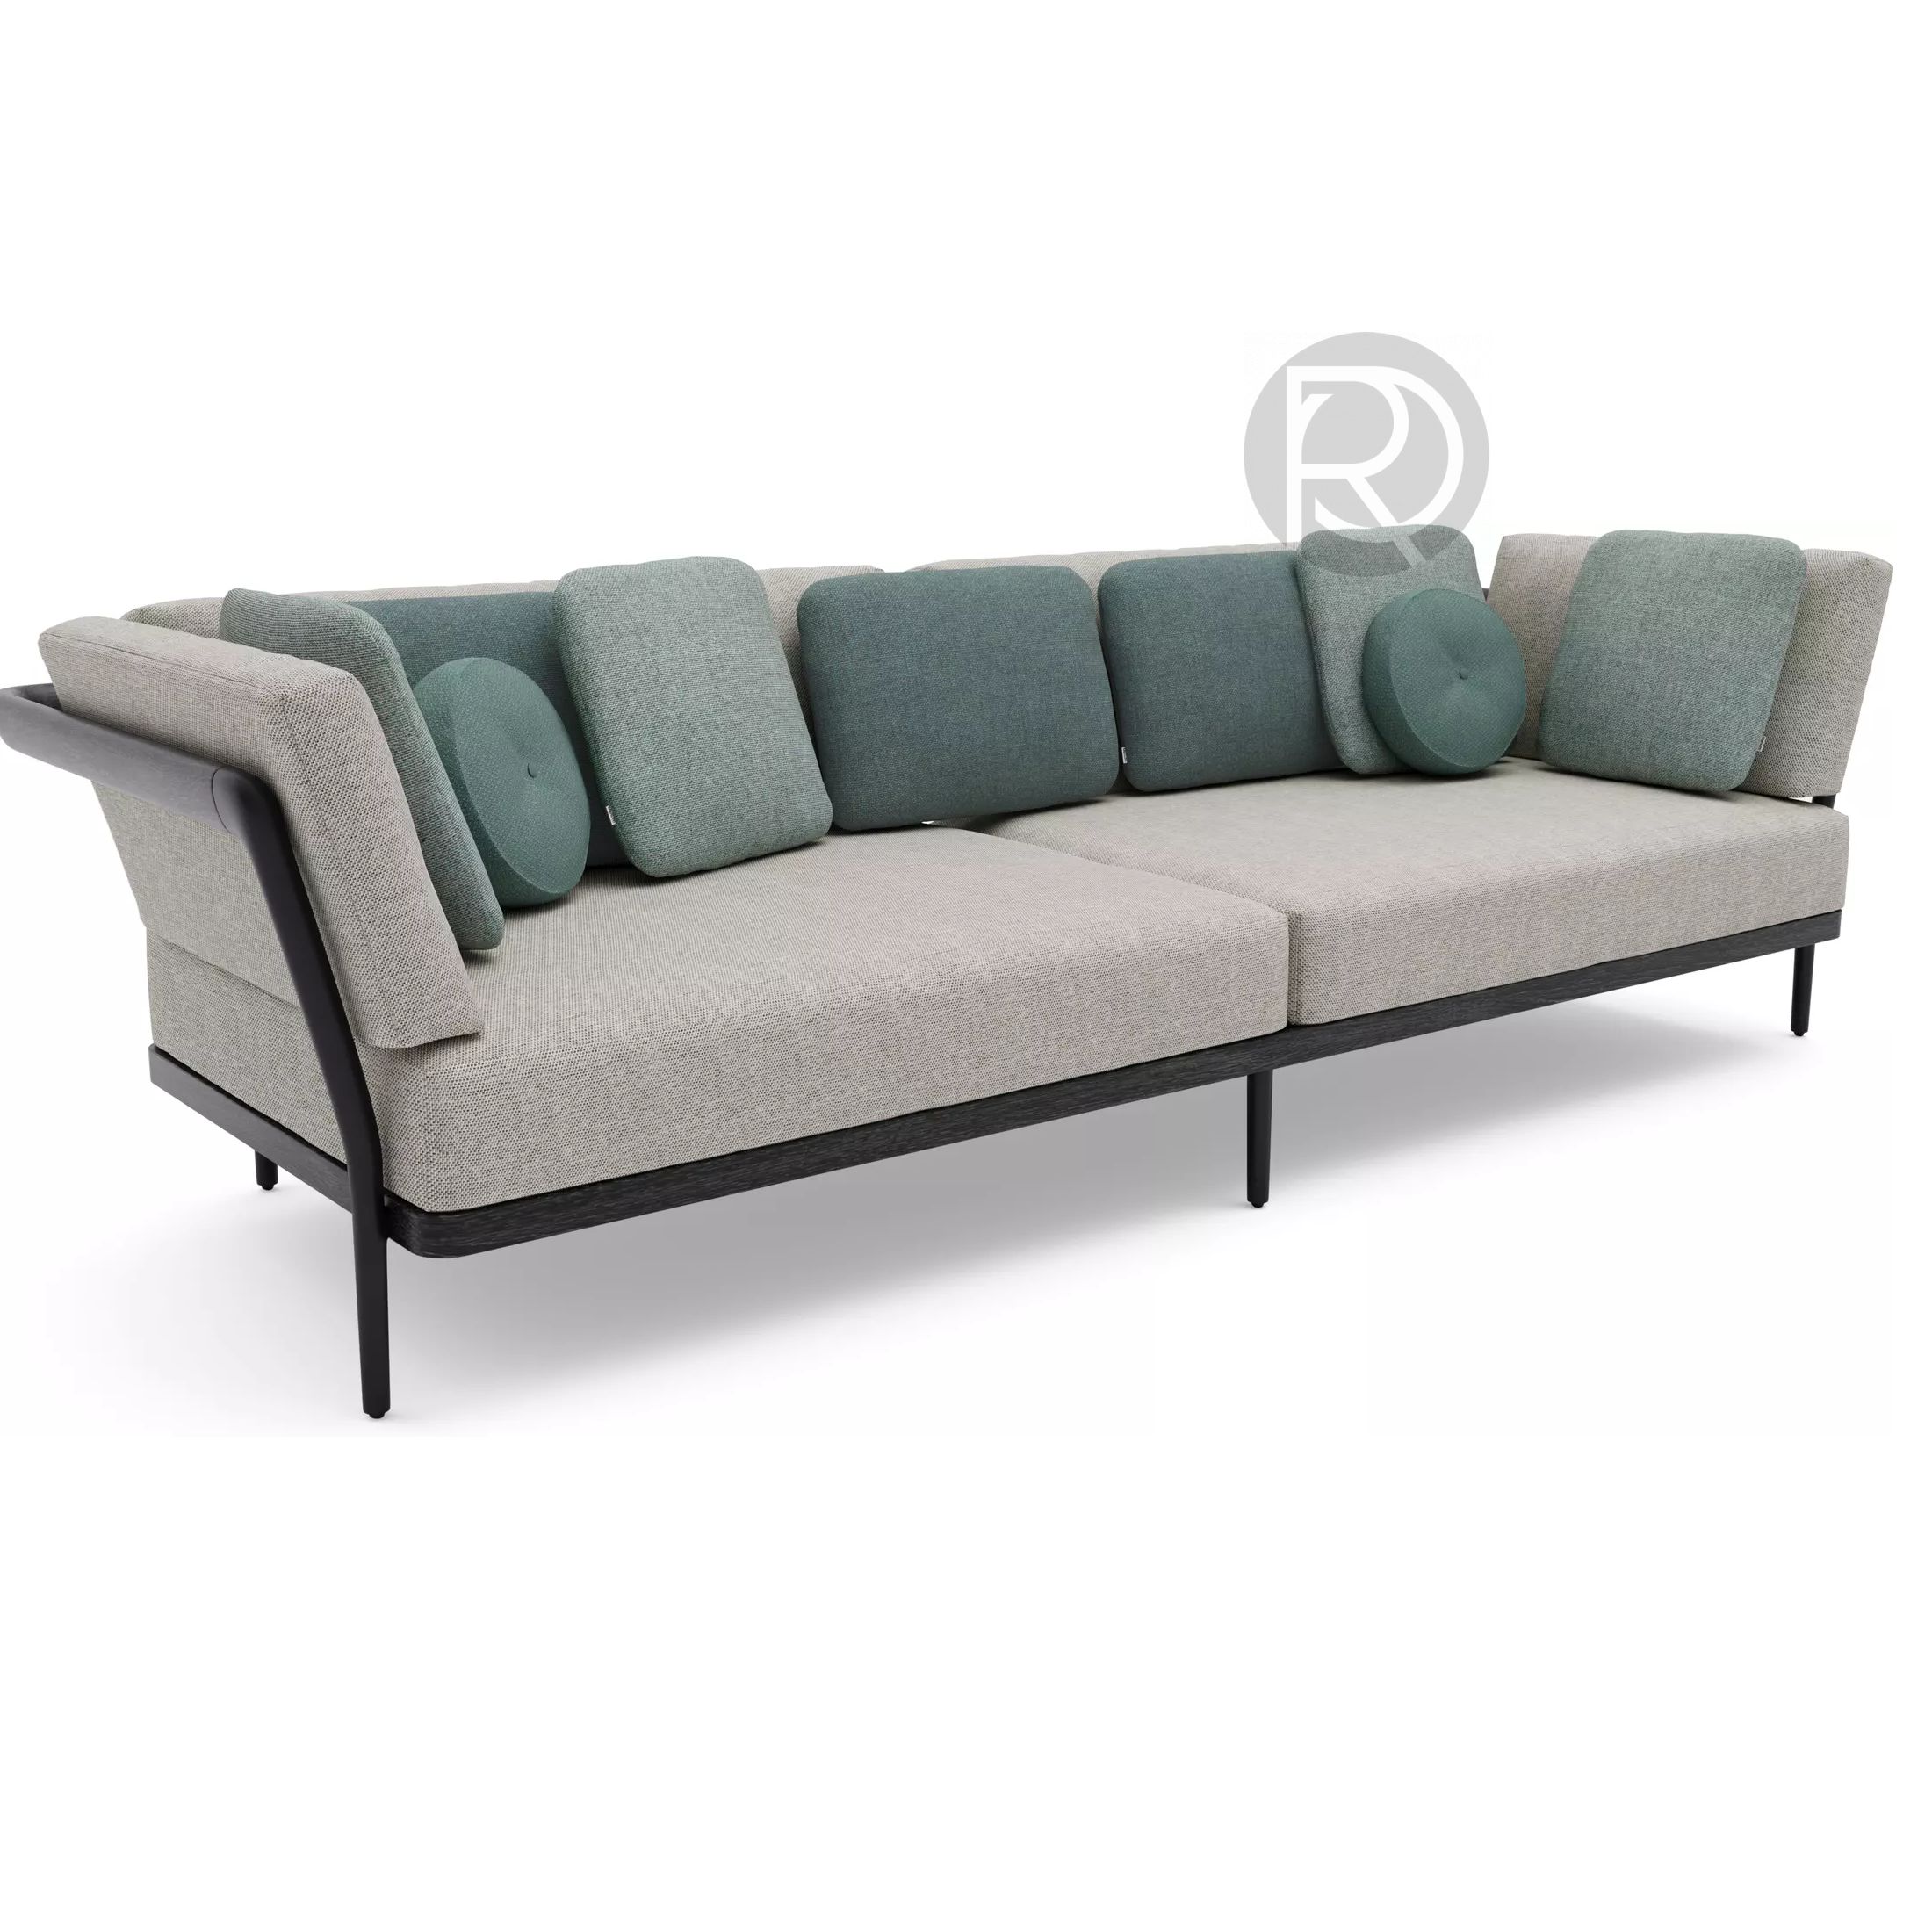 Sofa FLEX by Manutti